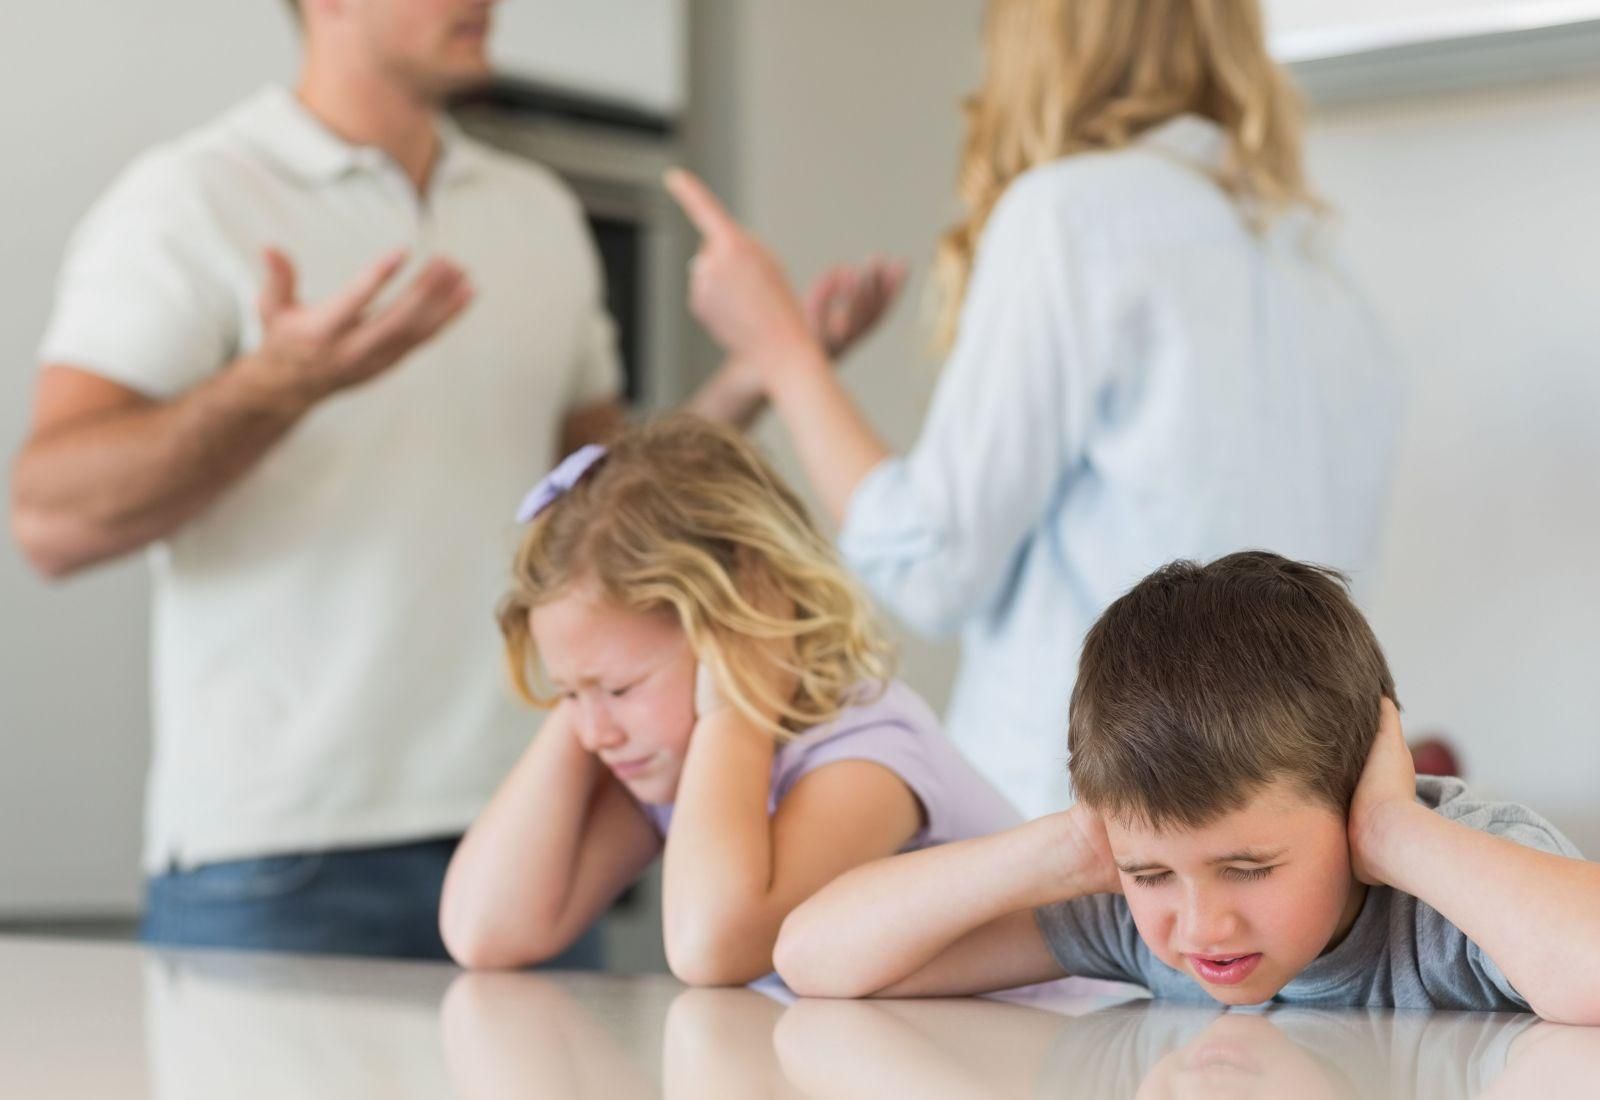 Дитячі психологічні травми можуть мати серйозні наслідки: декілька порад батькам